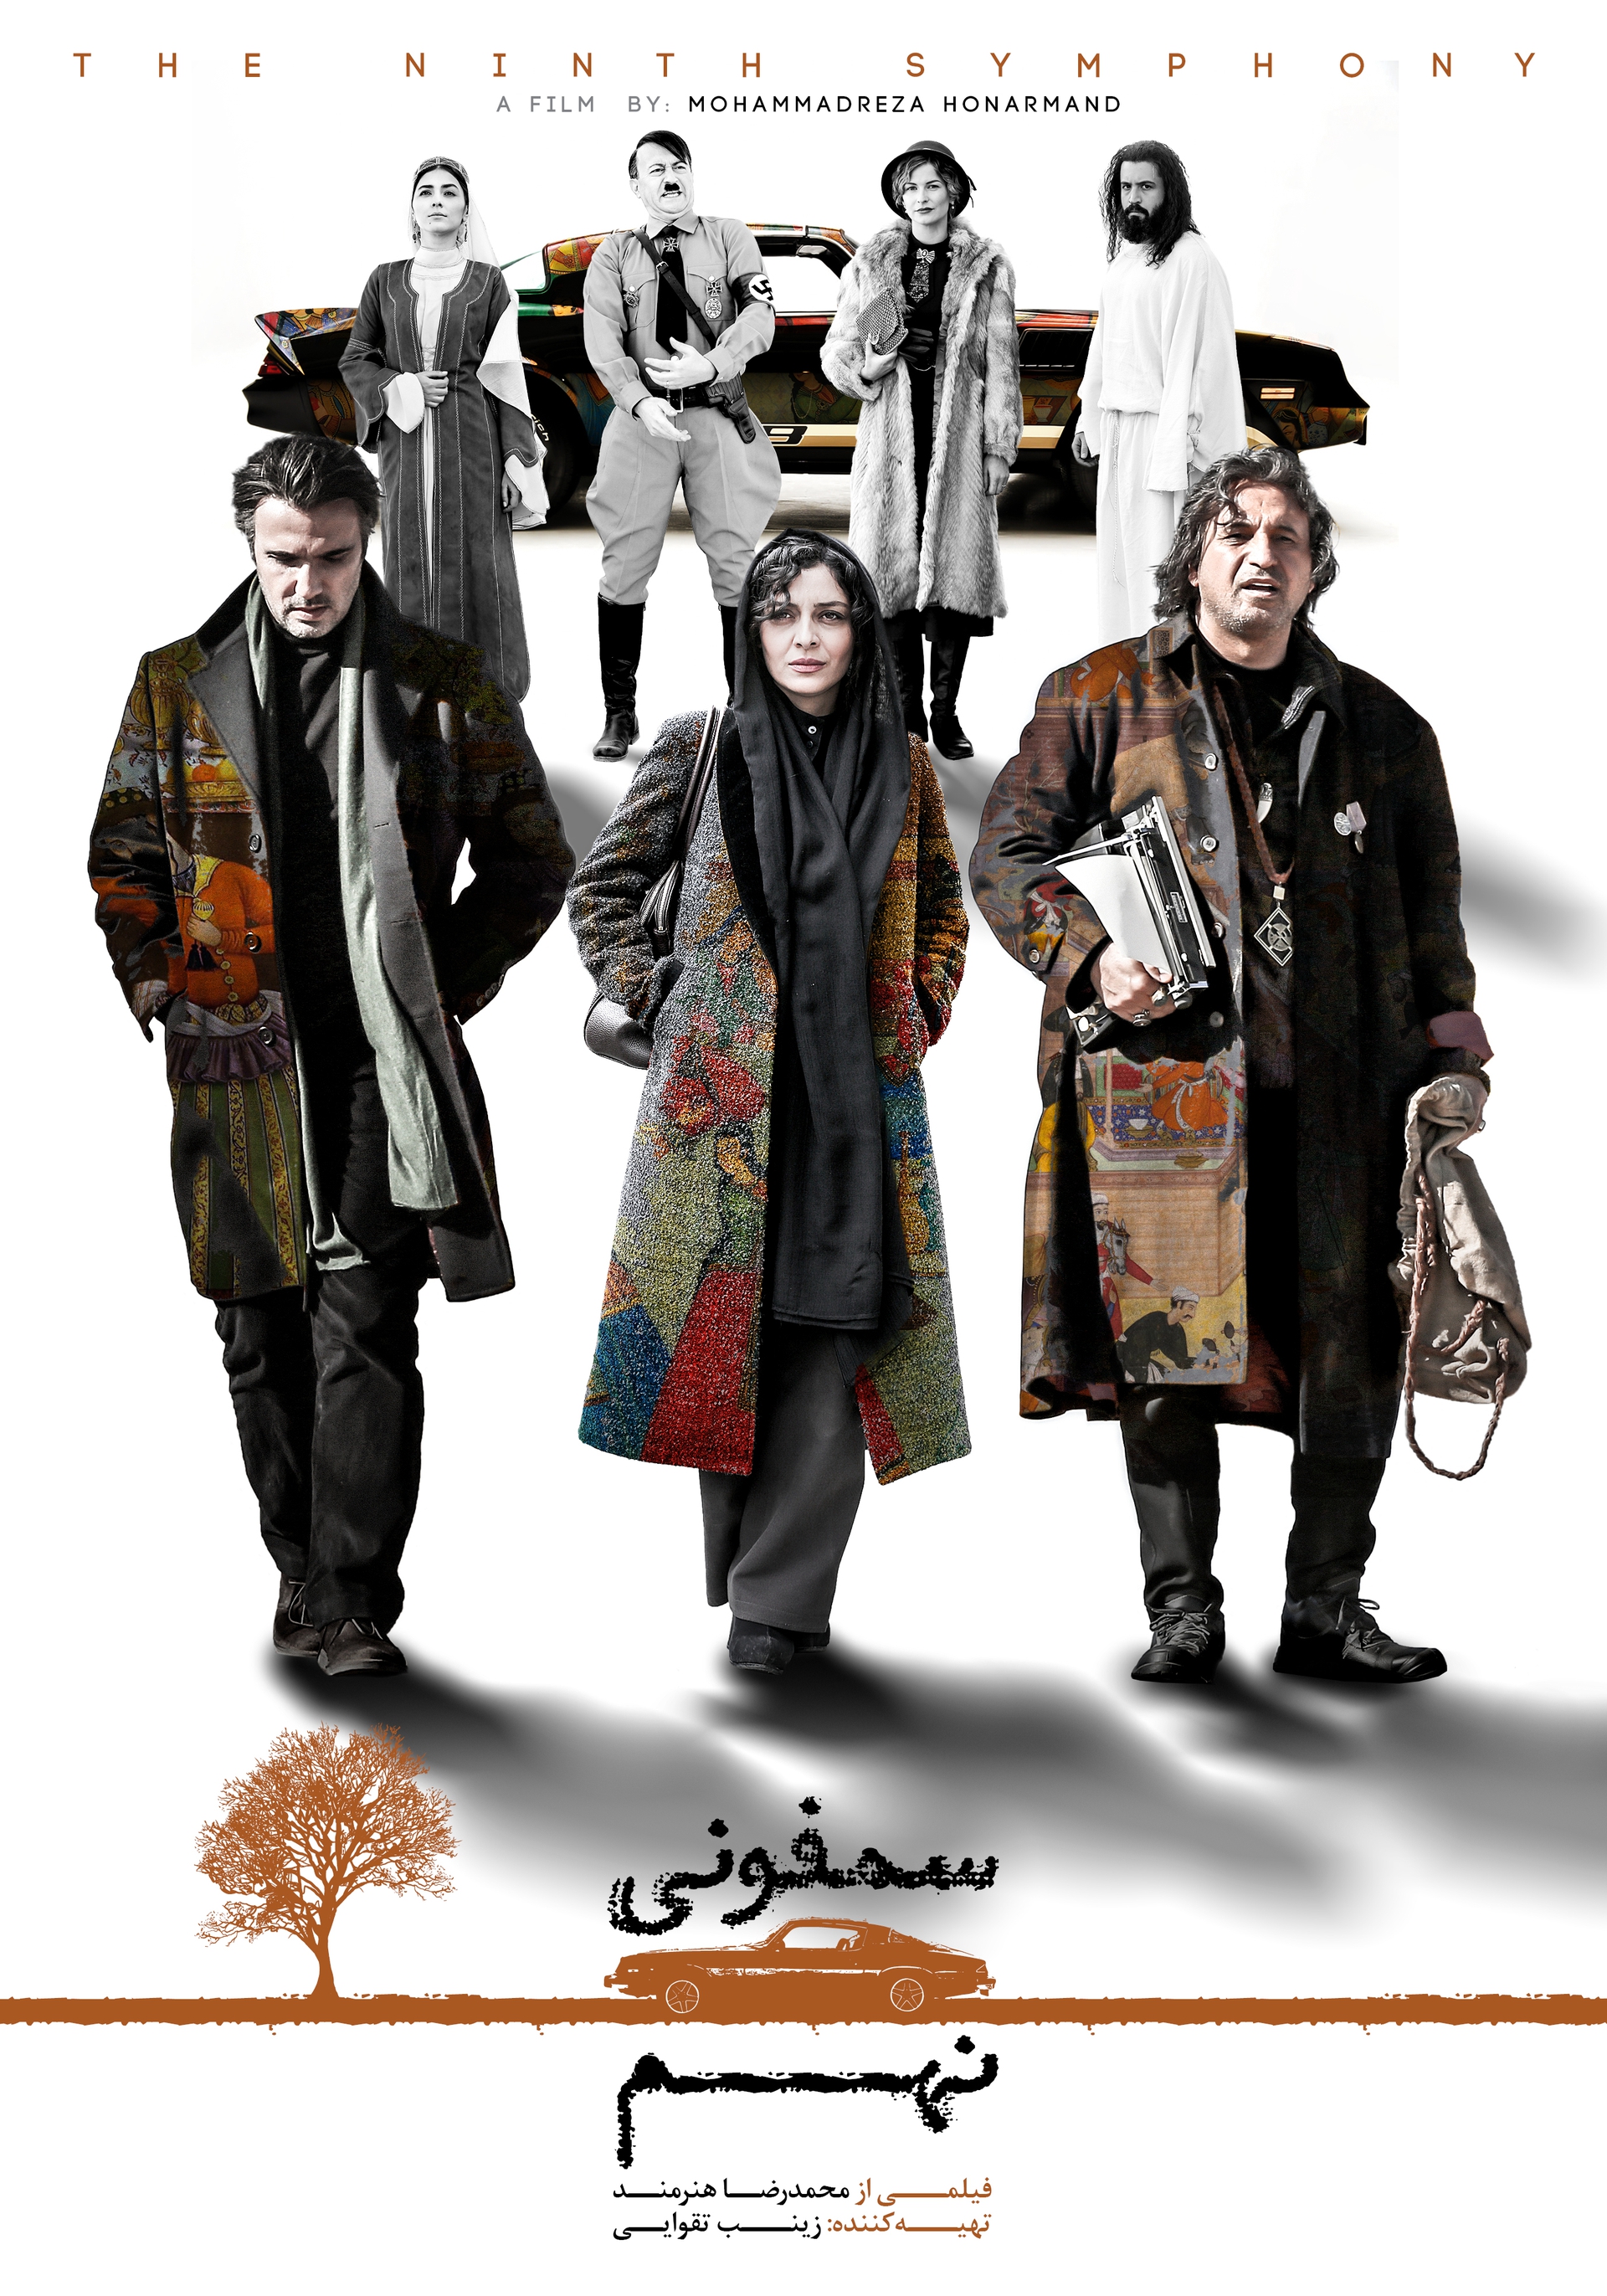 پوستر فیلم سینمایی سمفونی نهم به کارگردانی محمدرضا هنرمند